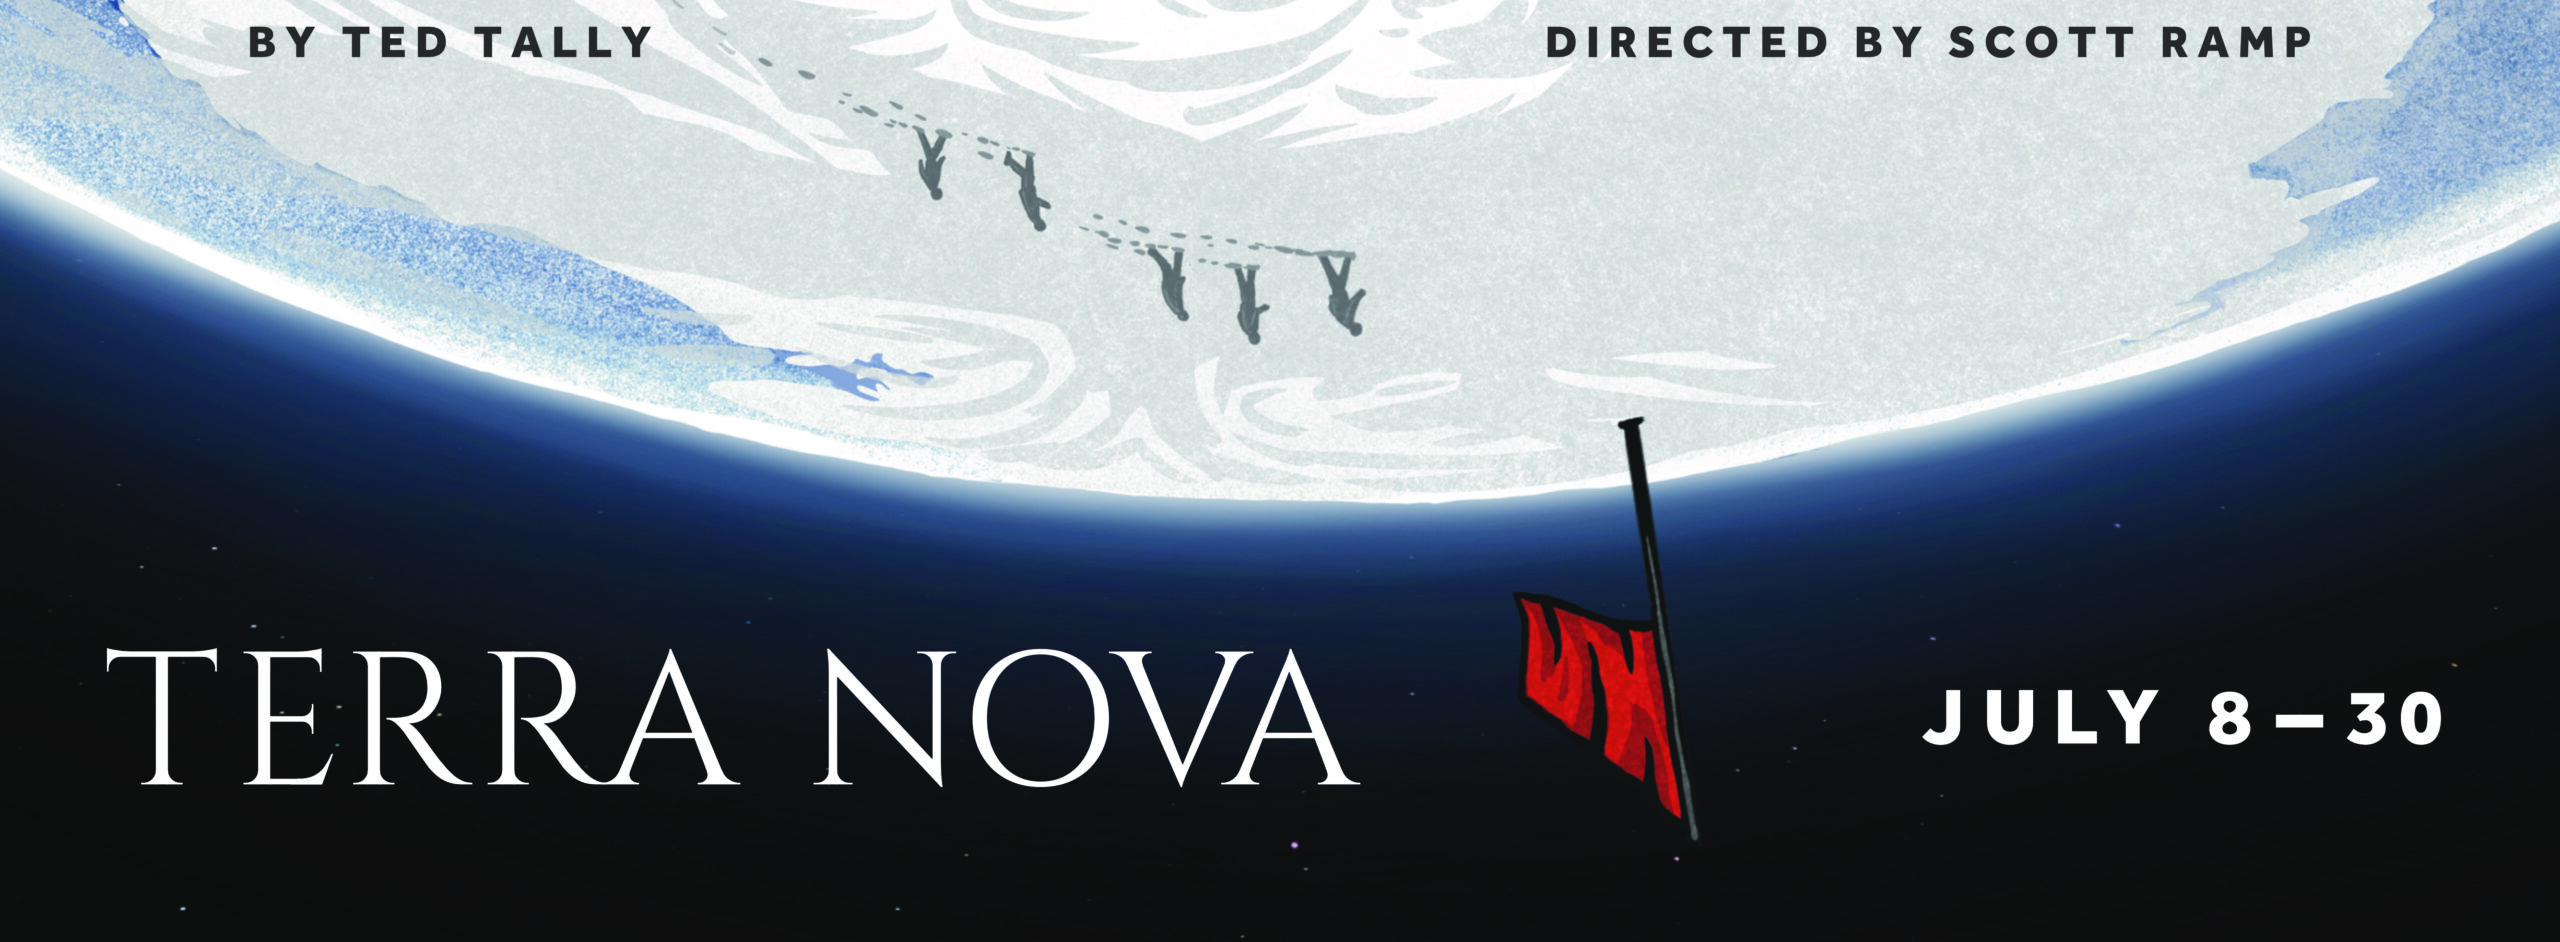 Program for Terra Nova